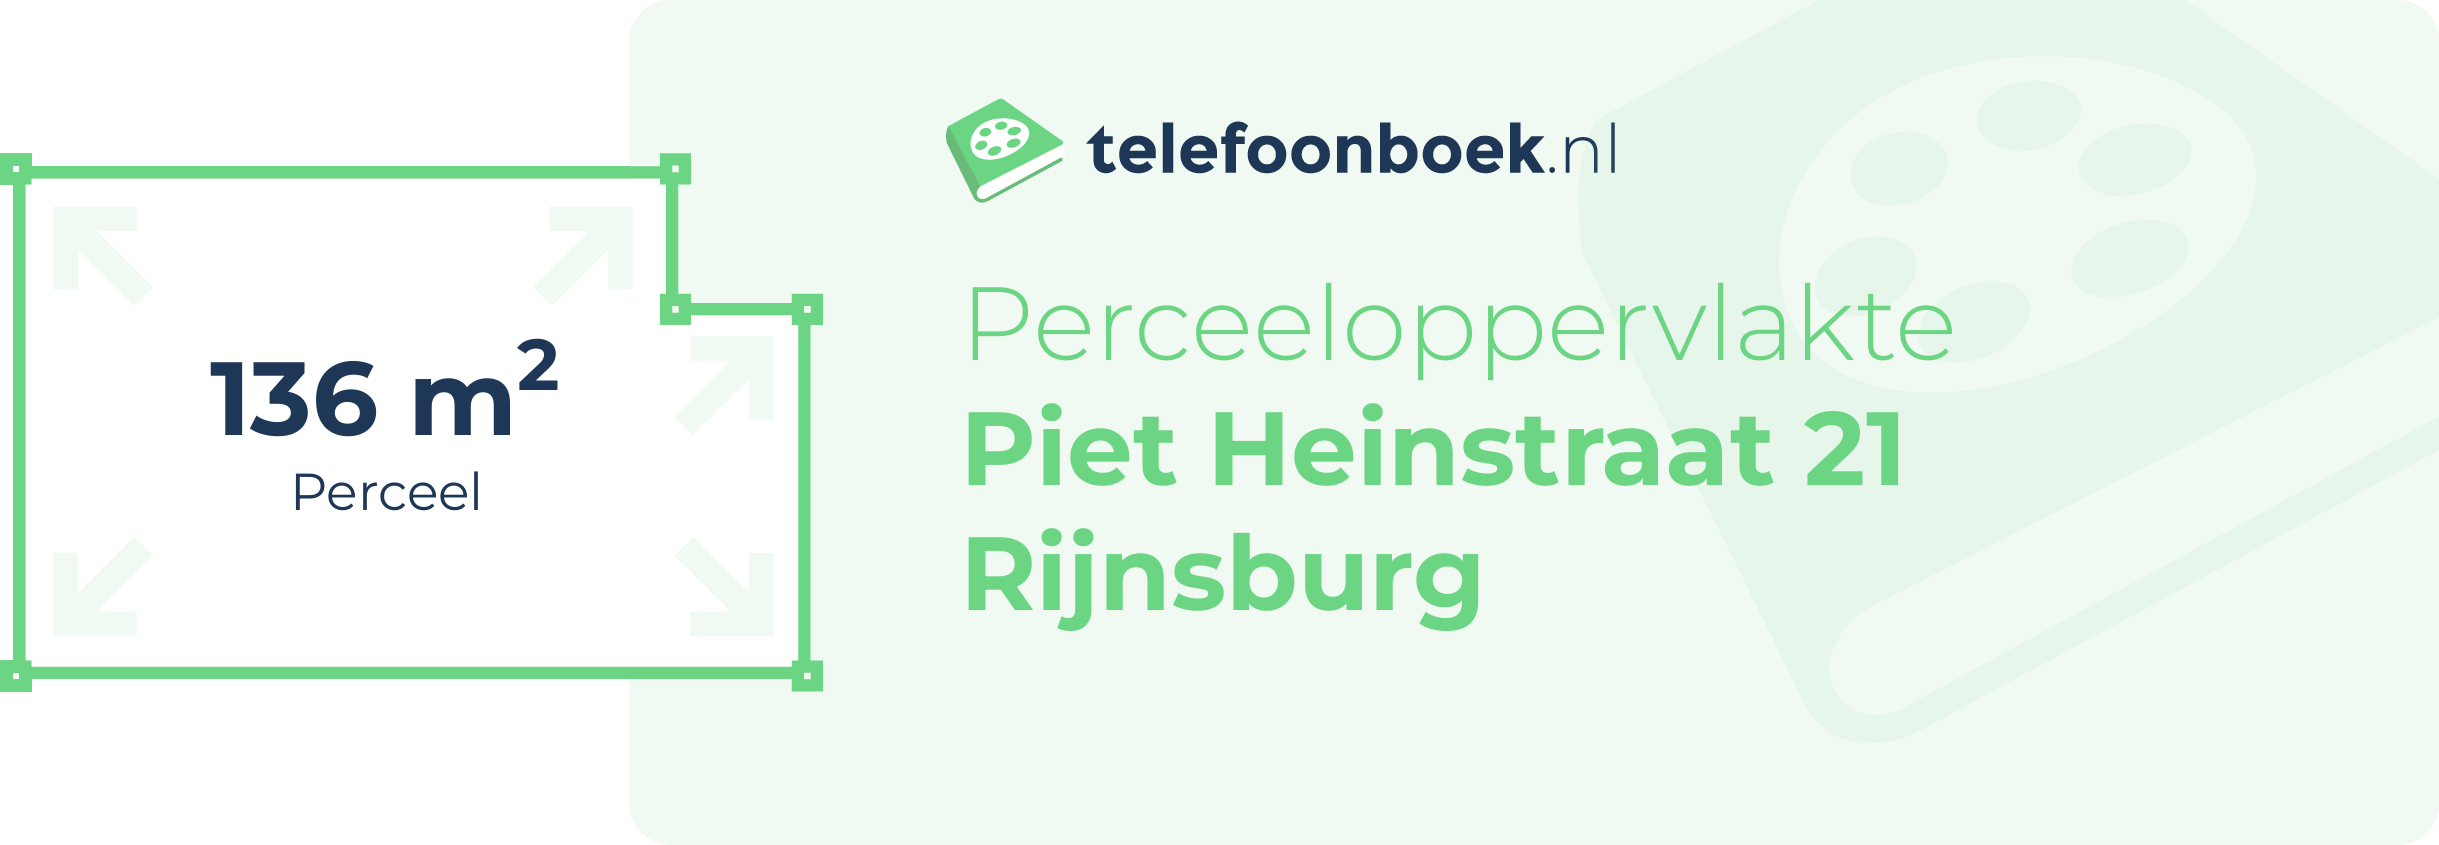 Perceeloppervlakte Piet Heinstraat 21 Rijnsburg